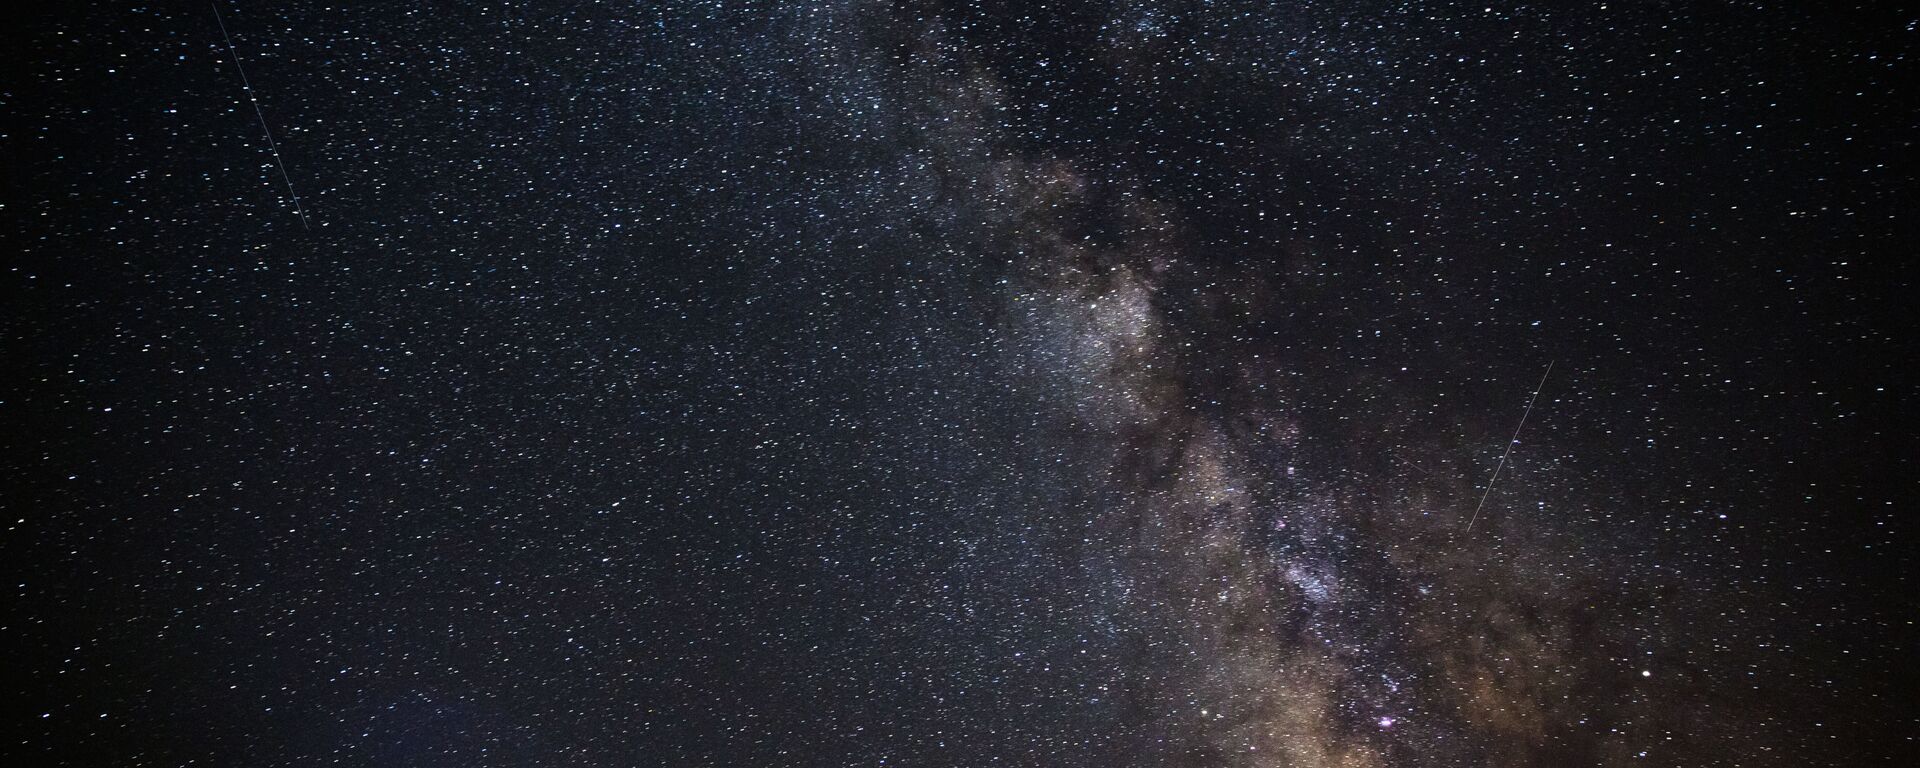 Звездное небо, наблюдаемое в Краснодарском крае во время метеорного потока Персеиды - Sputnik Грузия, 1920, 14.03.2021